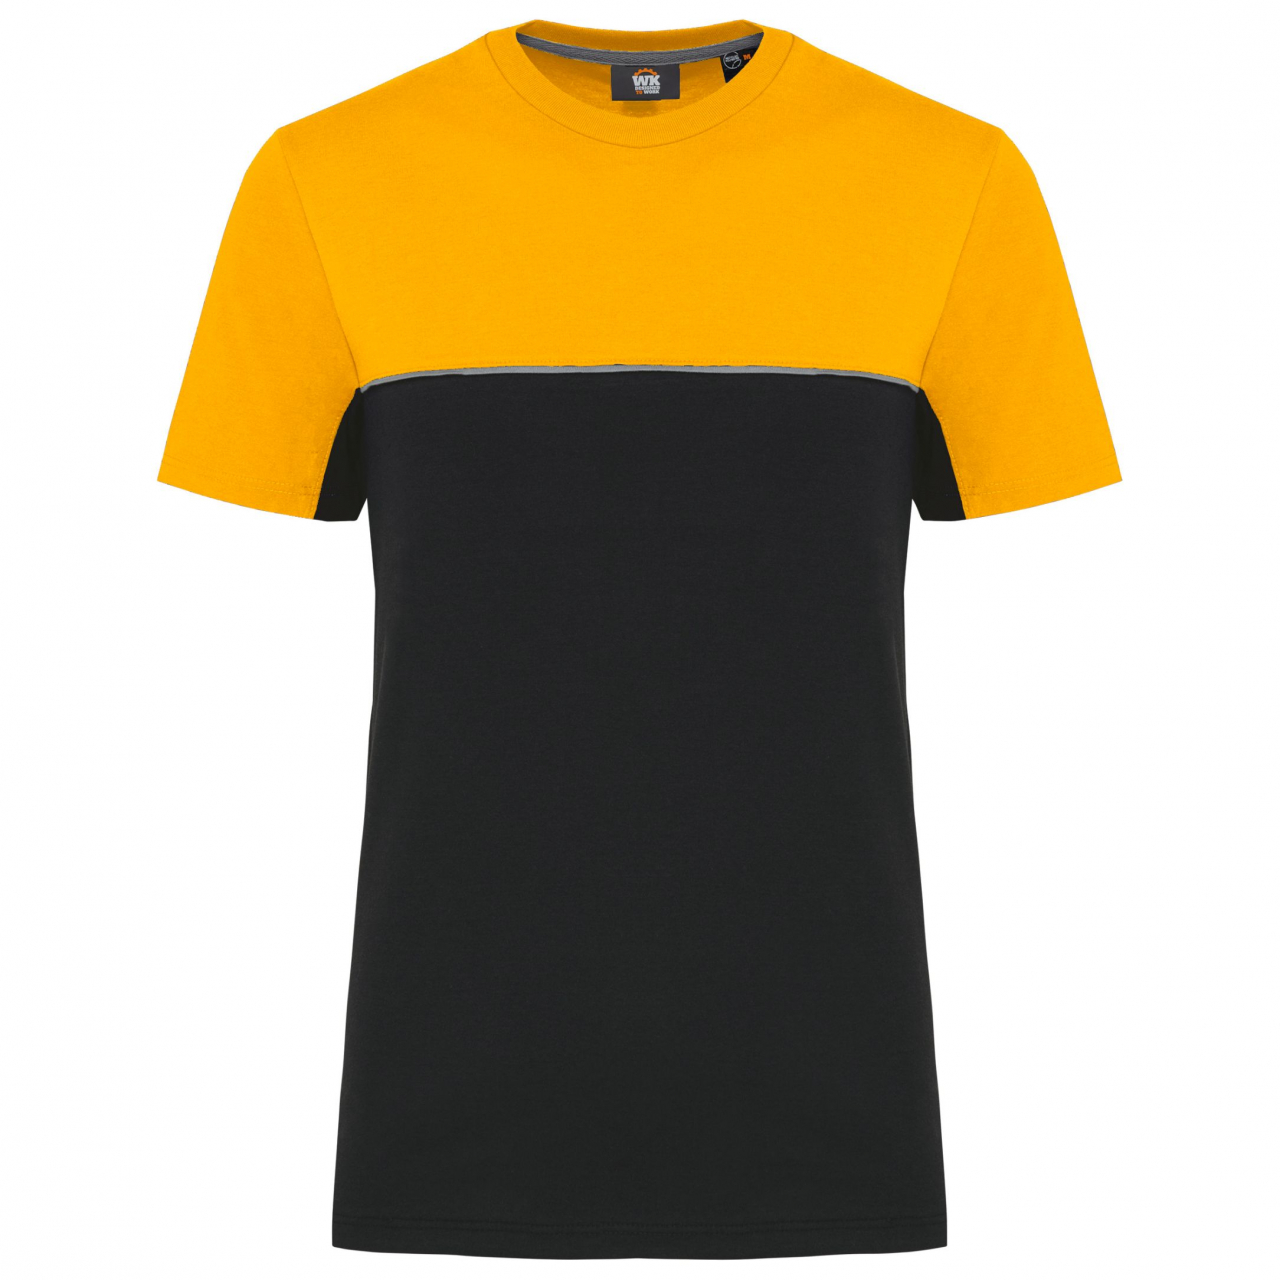 Pracovní triko dvoubarevné WK - černé-žluté, XXL